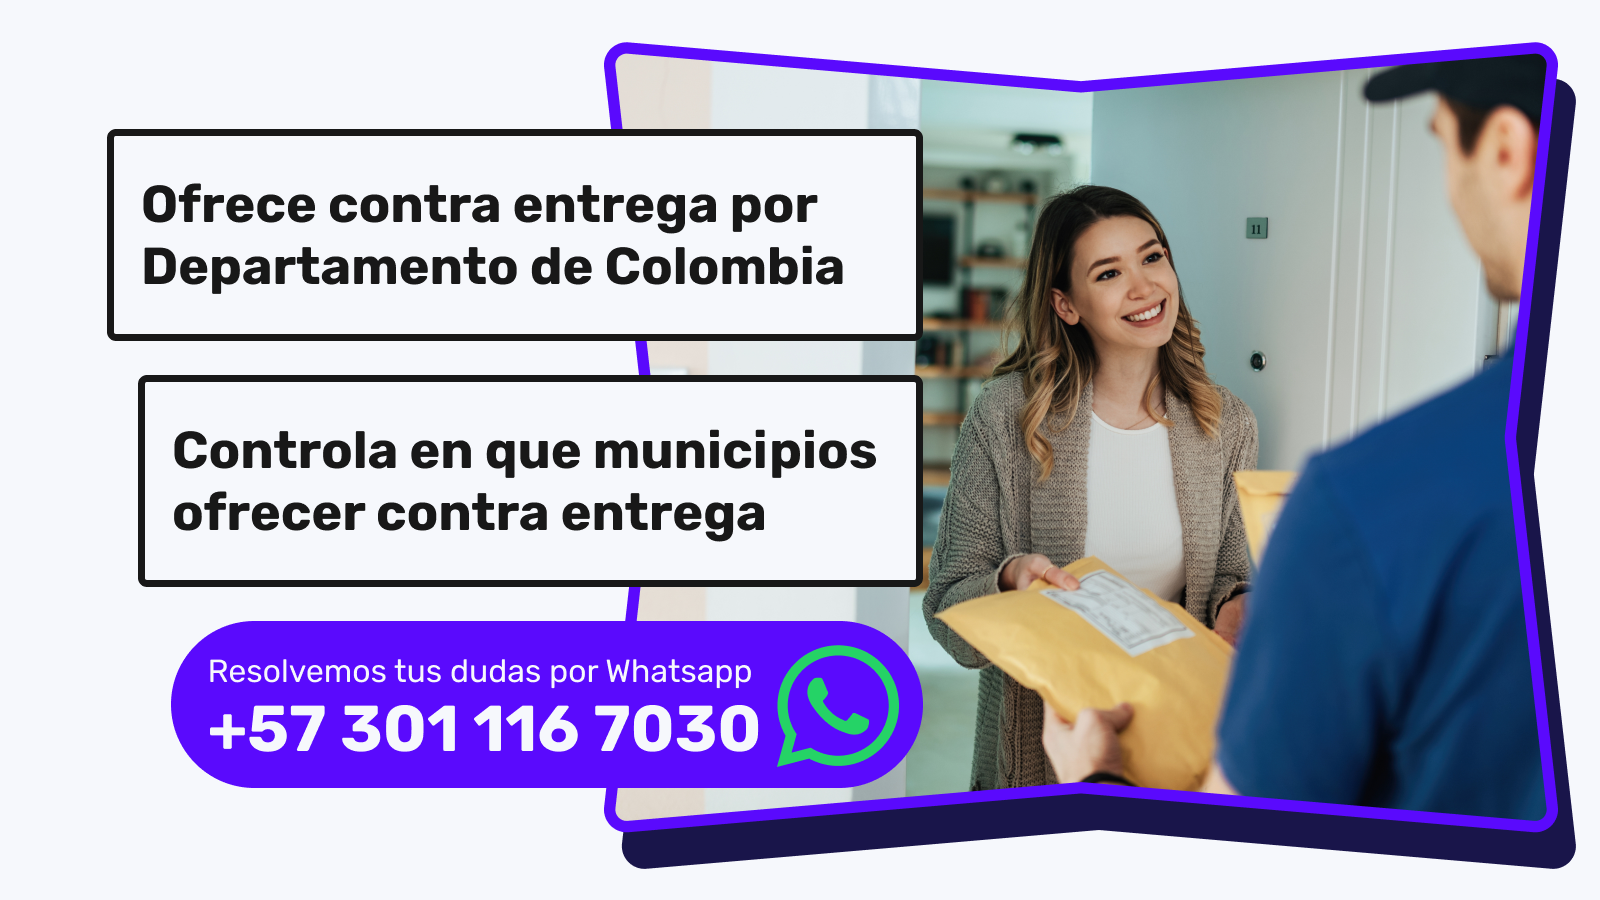 Elige en que ciudades de colombia ofrecer el contra entrega